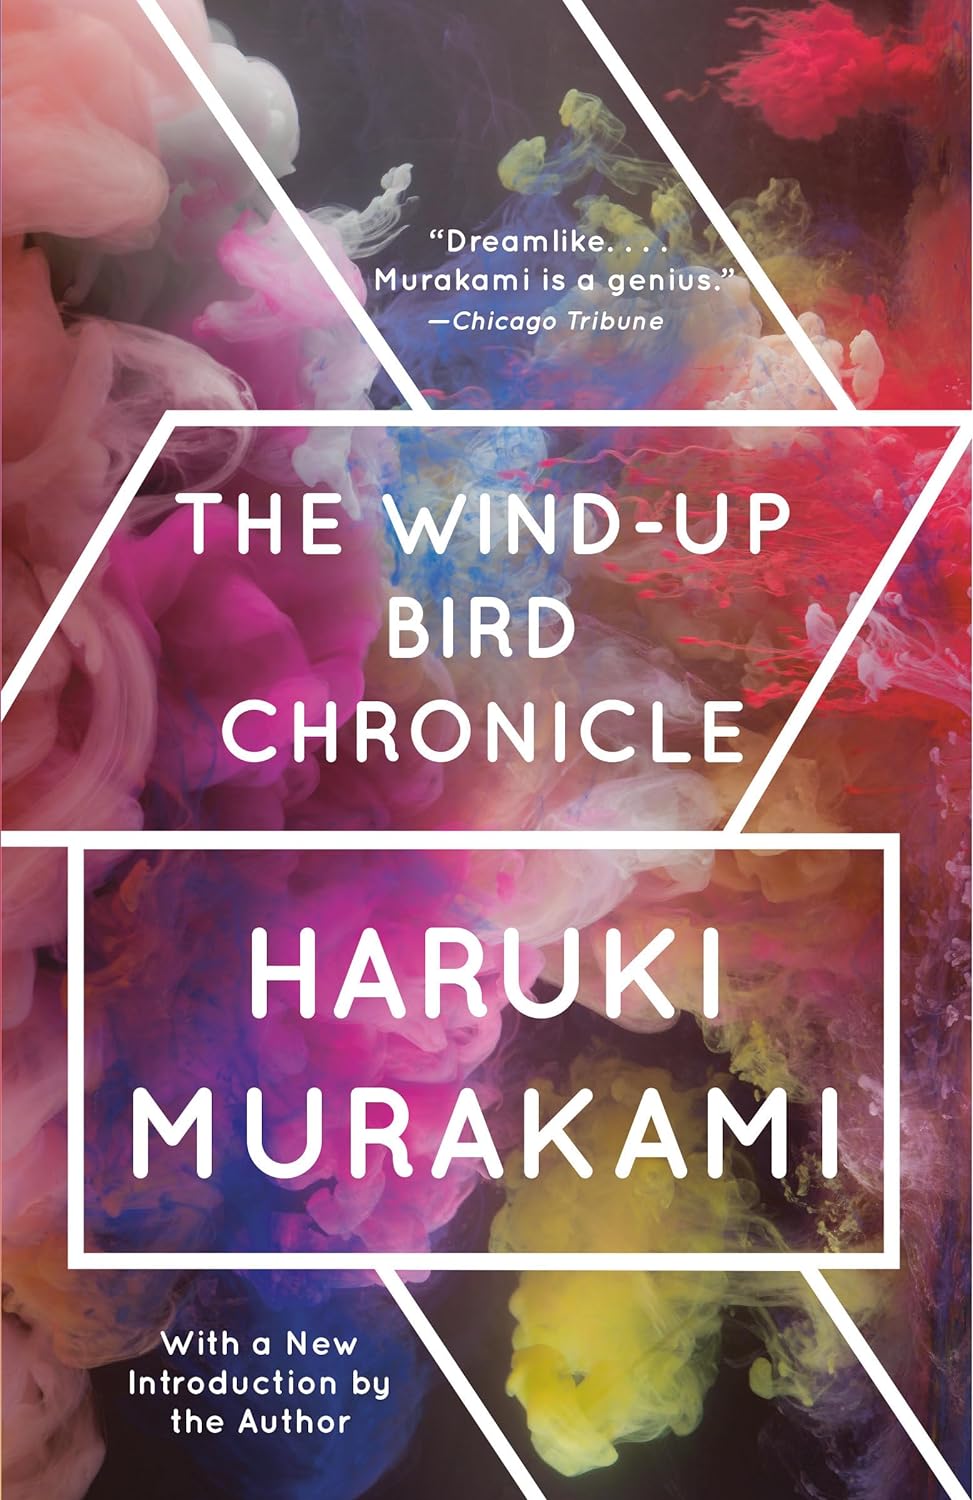 The Wind-Up Bird Chronicle by Haruki Murakami (1994)